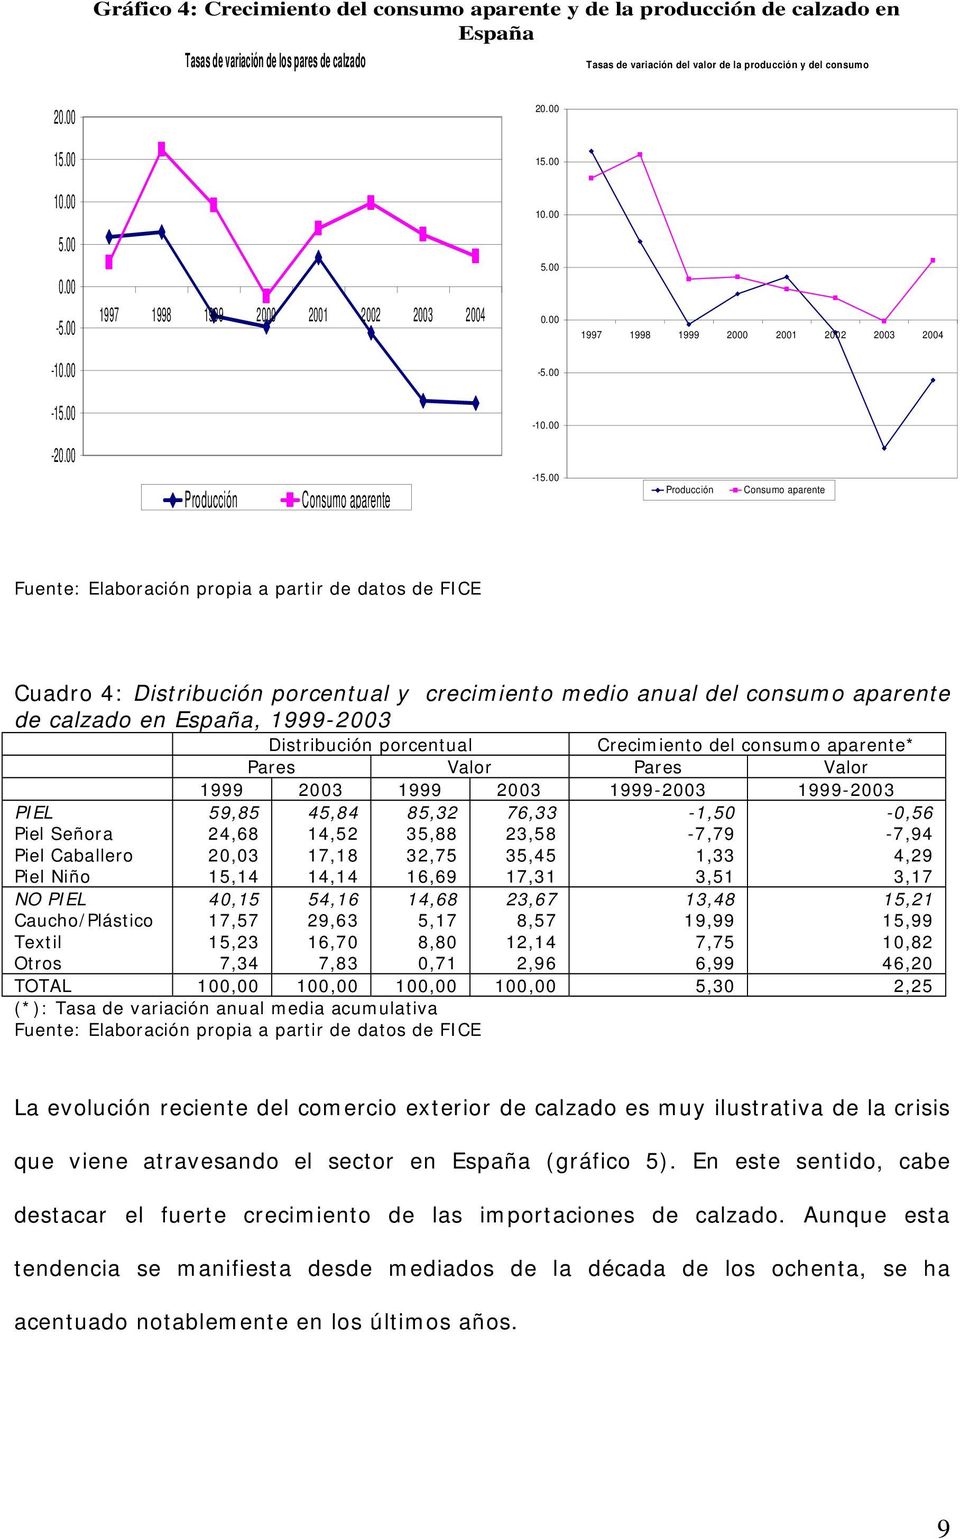 00 Producción Consumo aparente Fuente: Elaboración propia a partir de datos de FICE Cuadro 4: Distribución porcentual y crecimiento medio anual del consumo aparente de calzado en España, 1999-2003